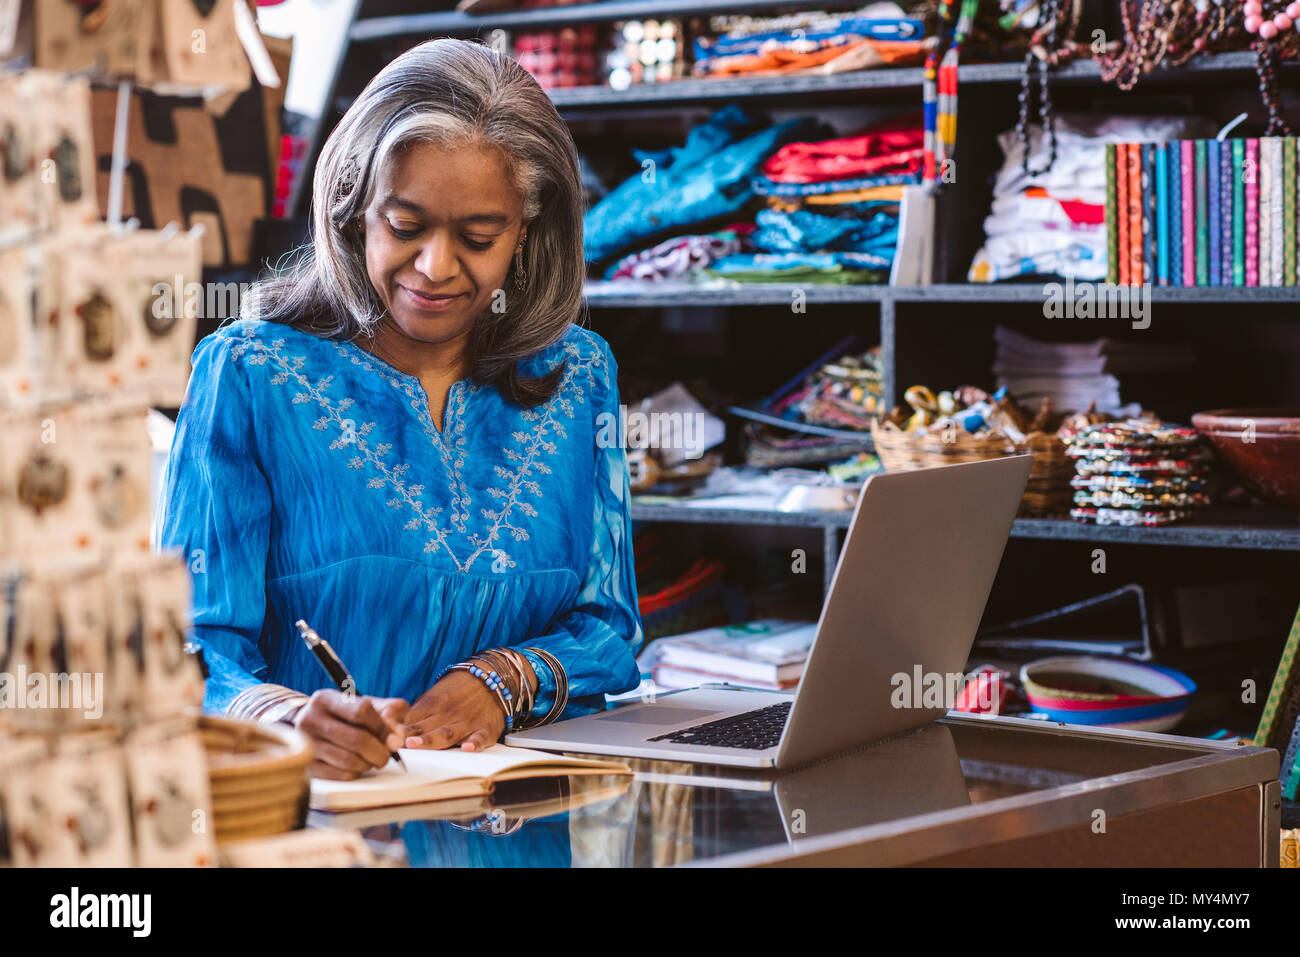 Lächelnd reife Stoff shop besitzer Schreiben in ein Notebook und arbeitet an einem Laptop auf einen Zähler von bunten Tüchern und Textilien umgeben Stockfoto